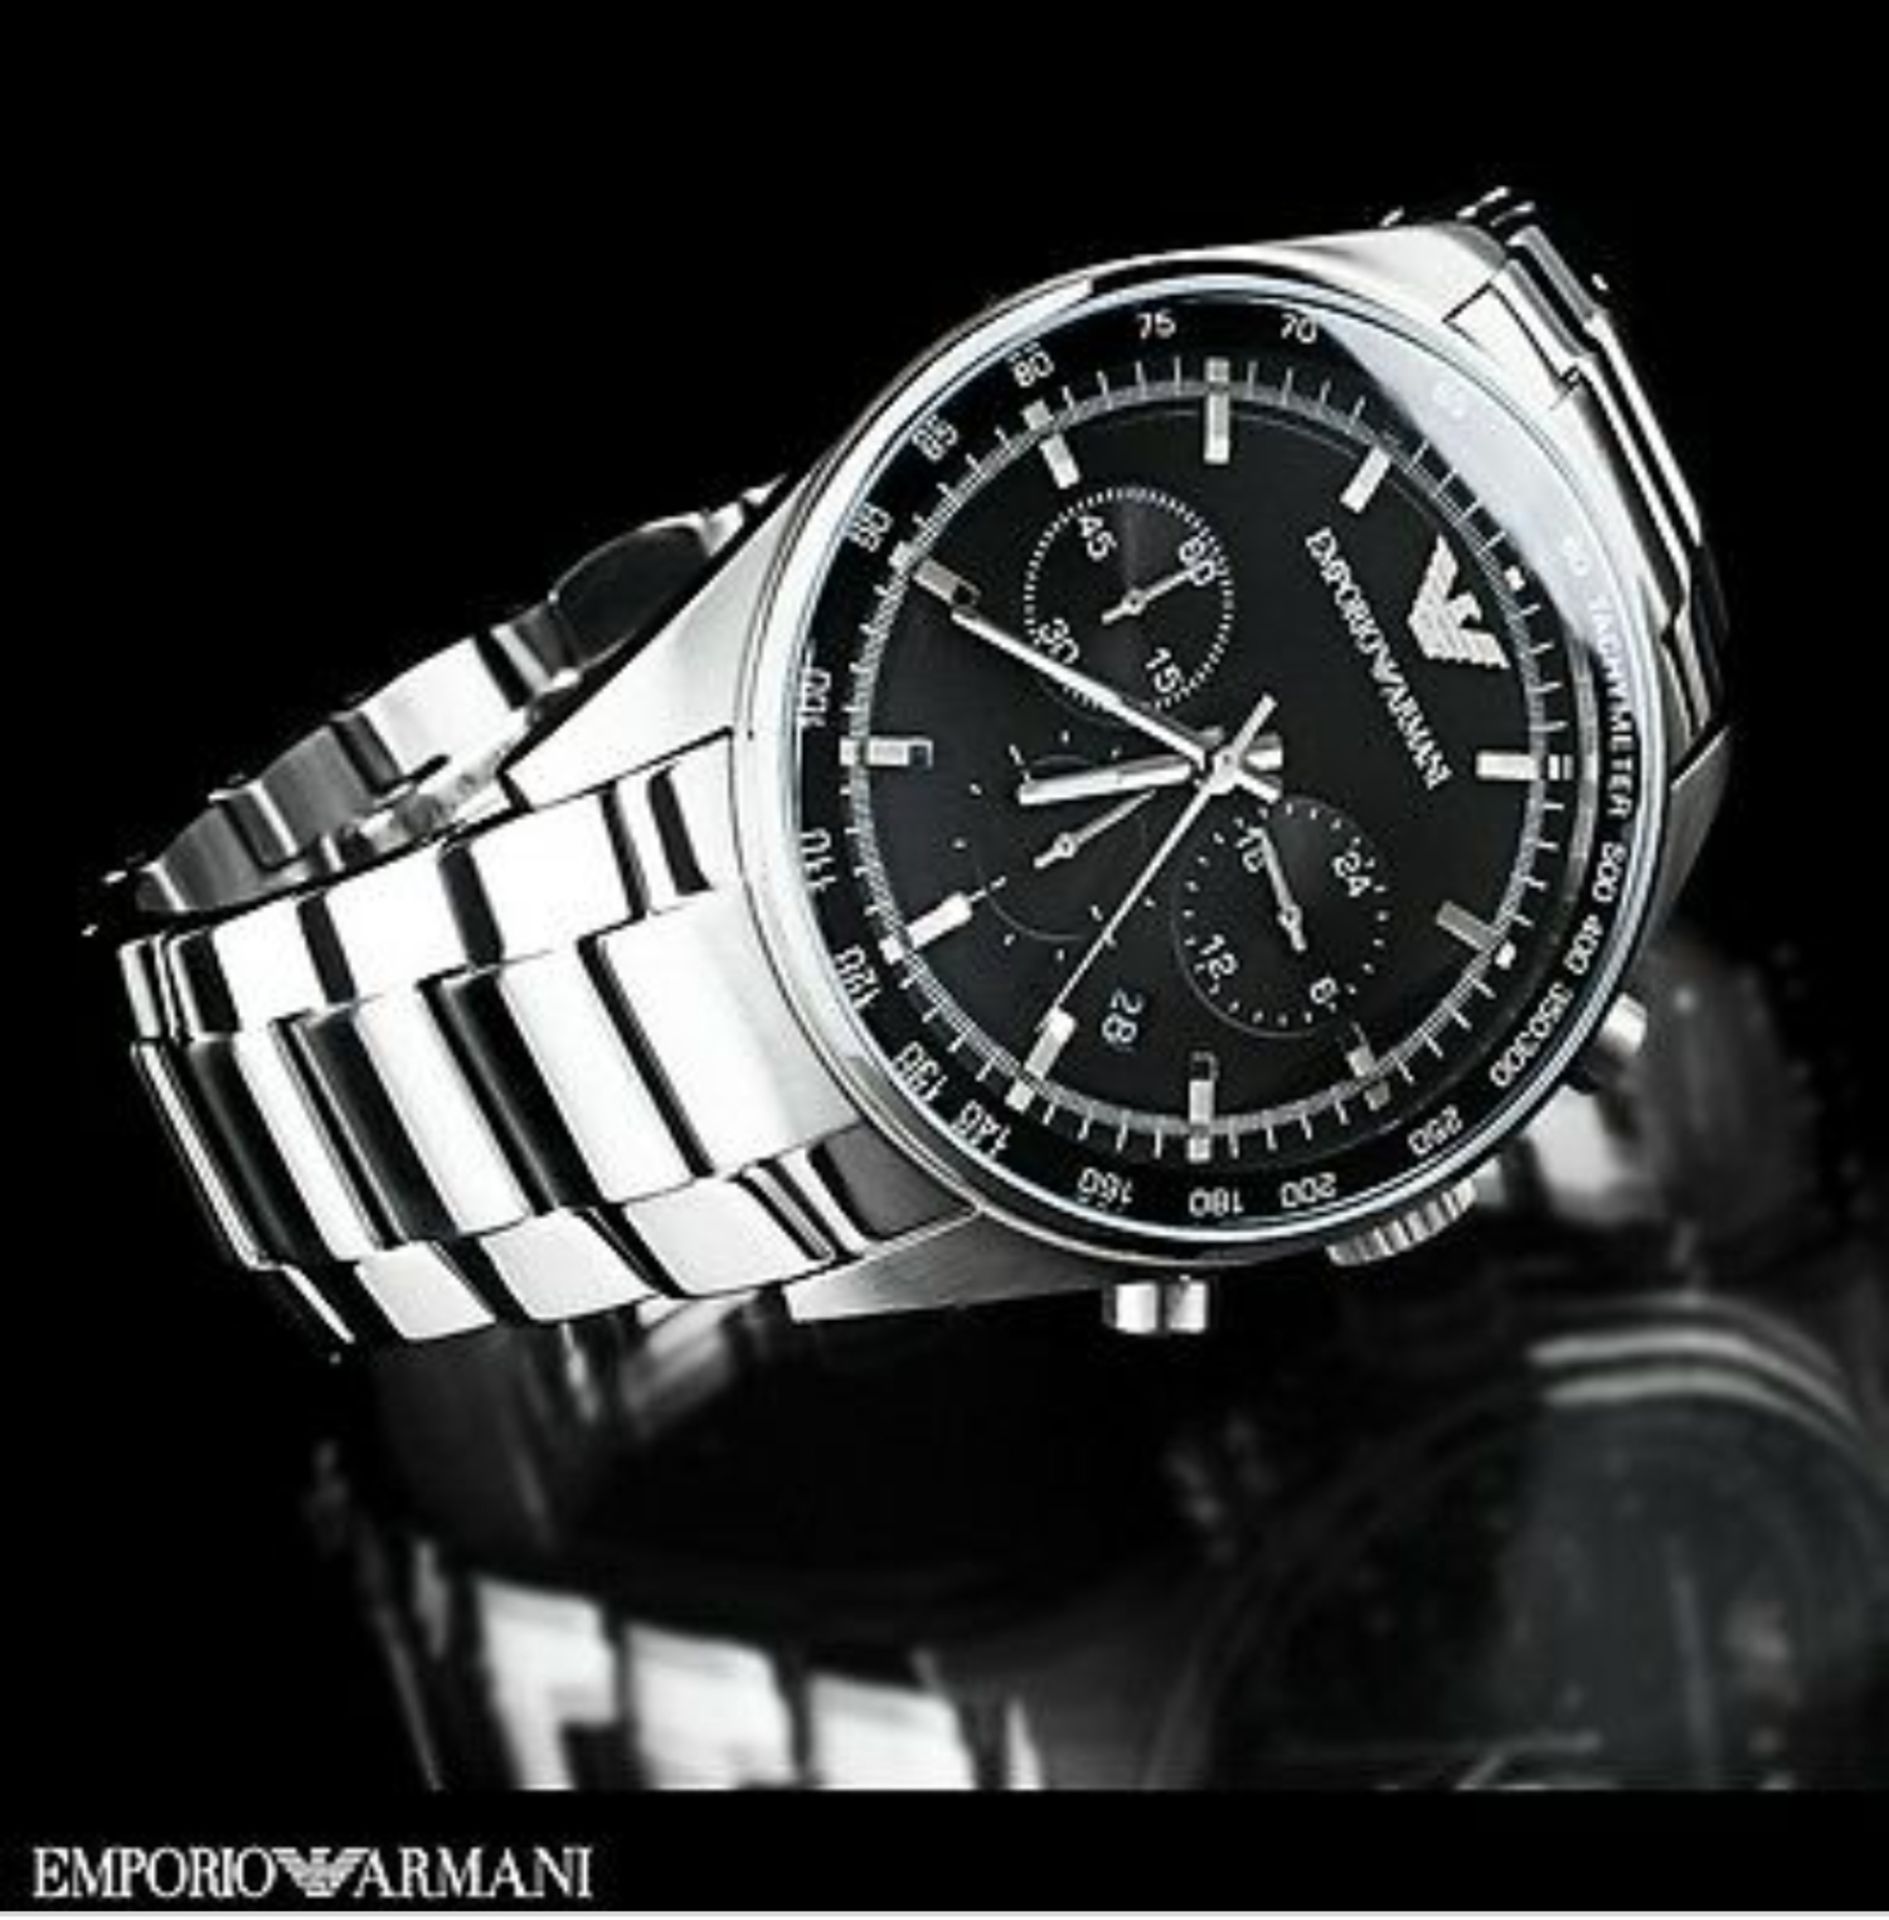 Emporio Armani AR5980 Men's Sportivo Black Dial Silver Bracelet Quartz Chronograph Watch - Image 4 of 8